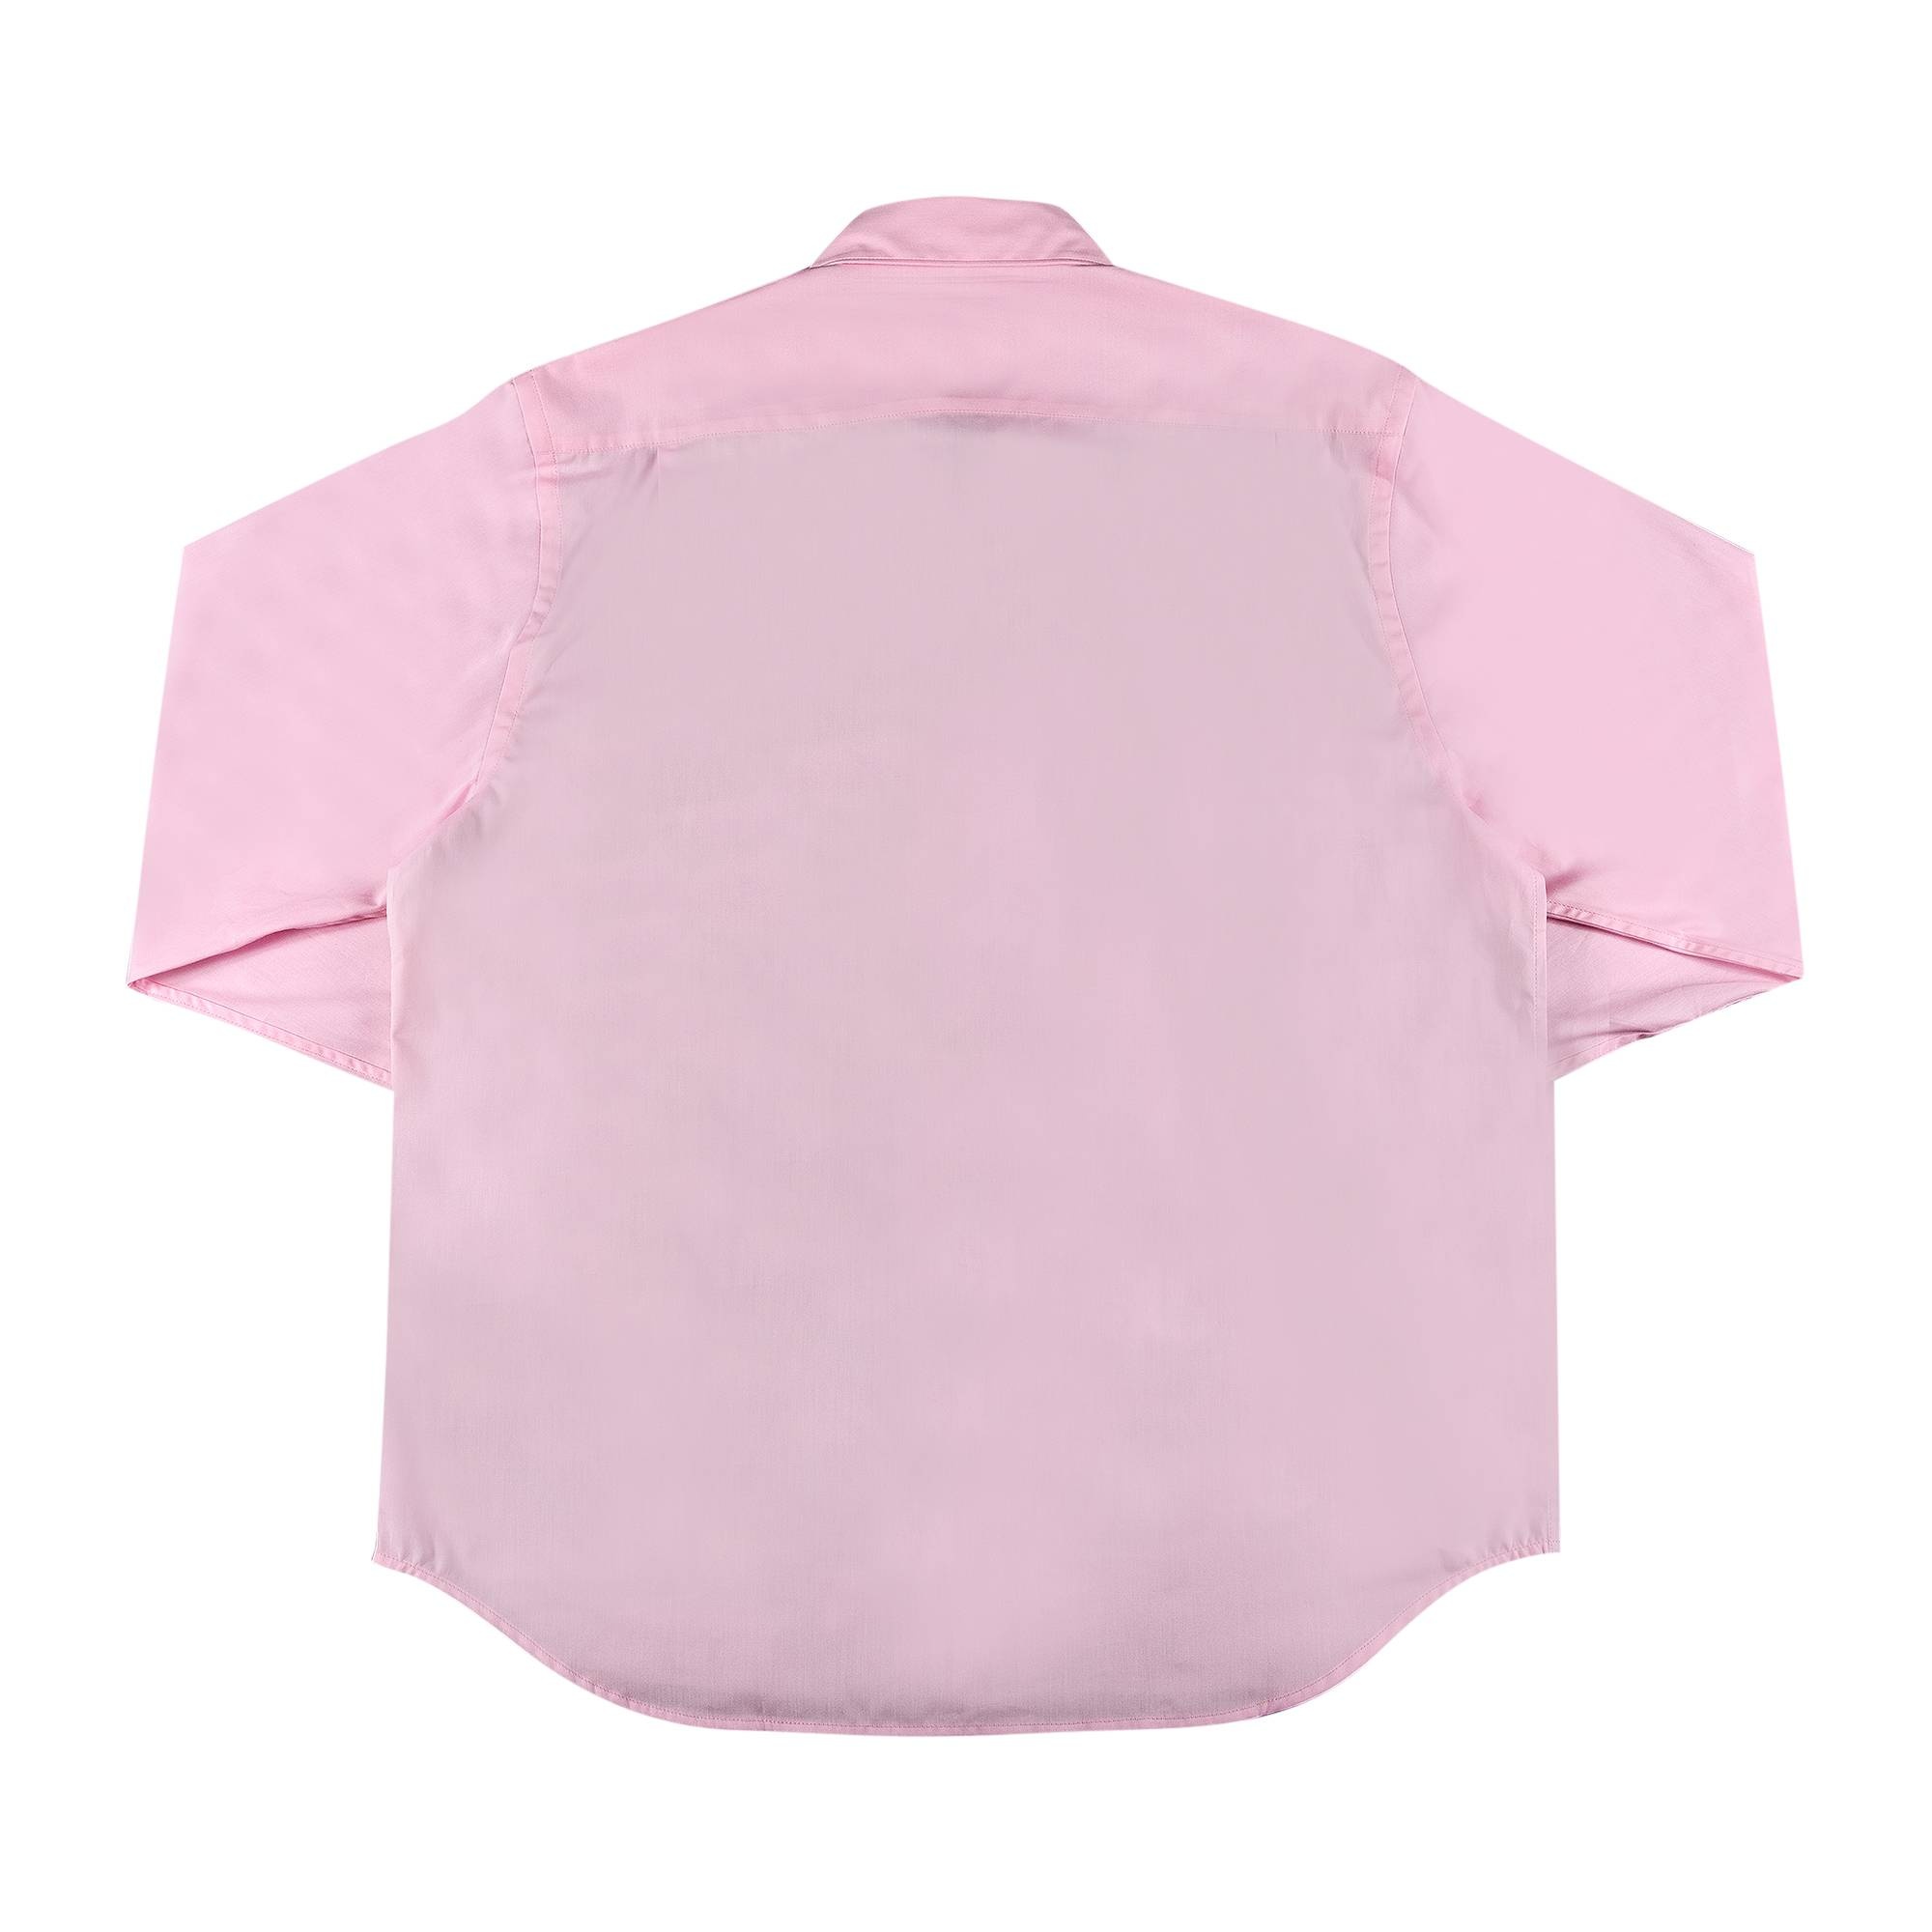 Supreme x Junya Watanabe x Comme des Garçons MAN Nature Shirt 'Pink' - 2